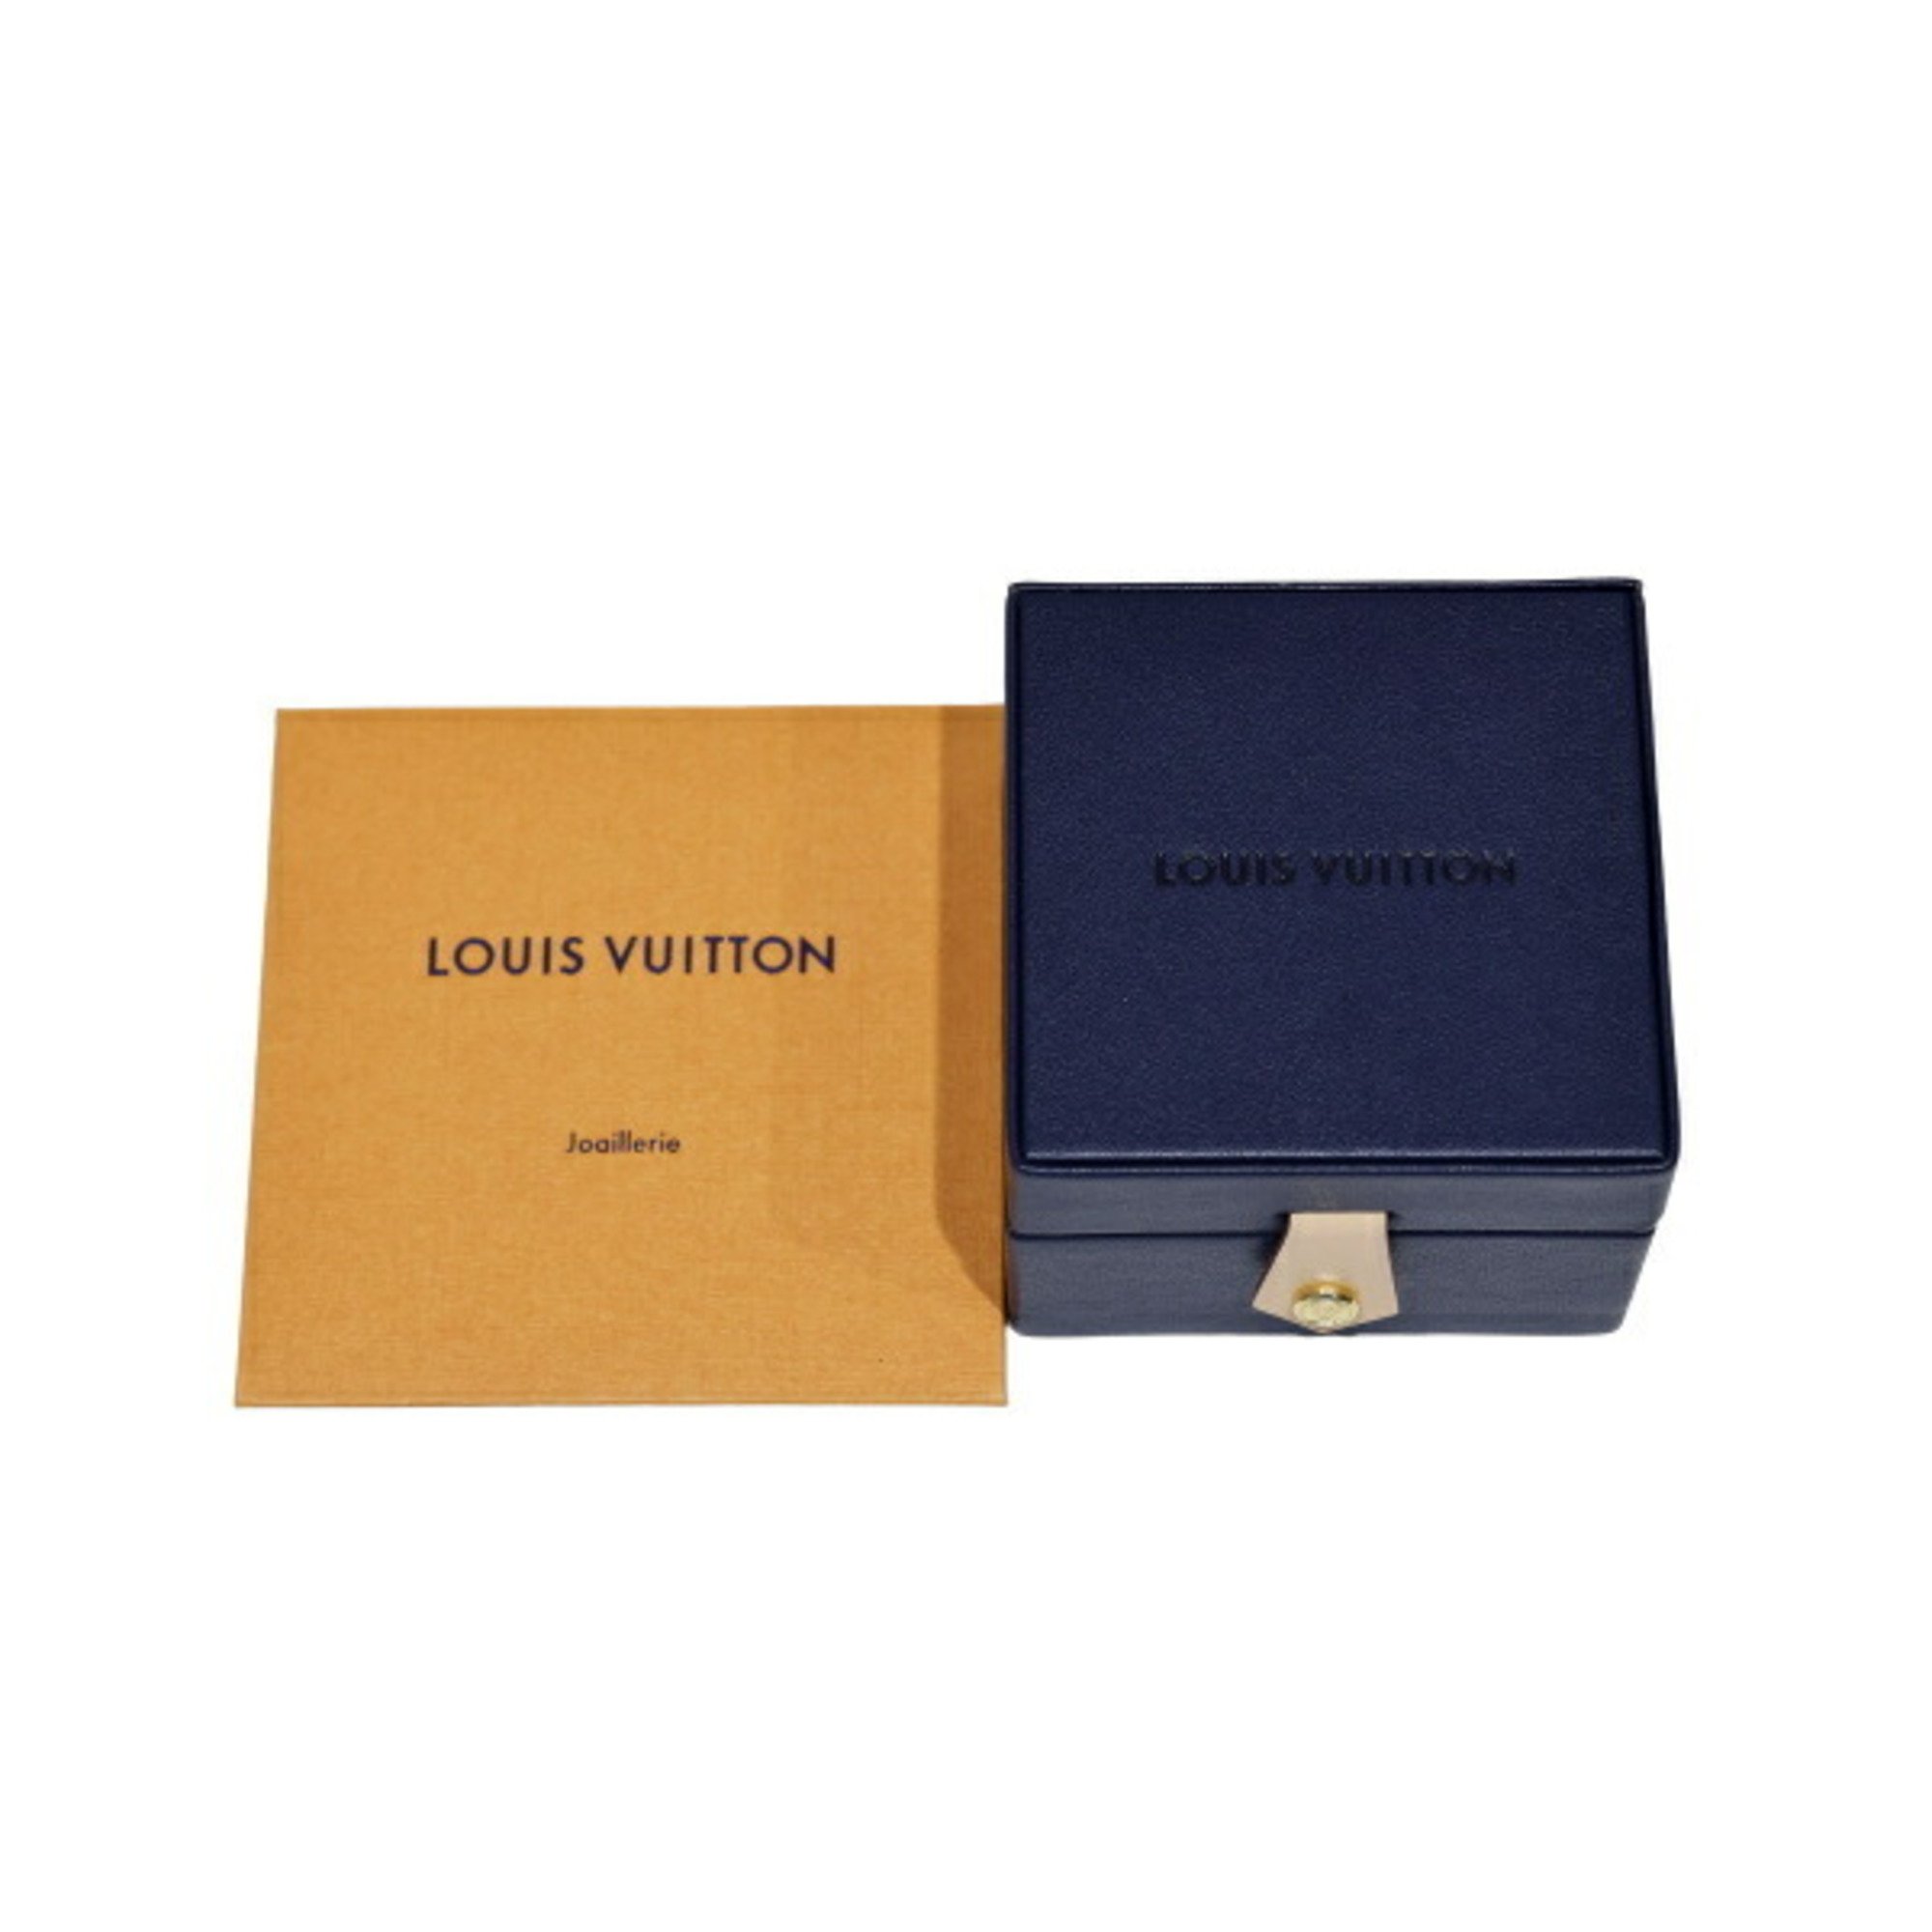 Louis Vuitton Star Blossom K18WG White Gold Bracelet J382360